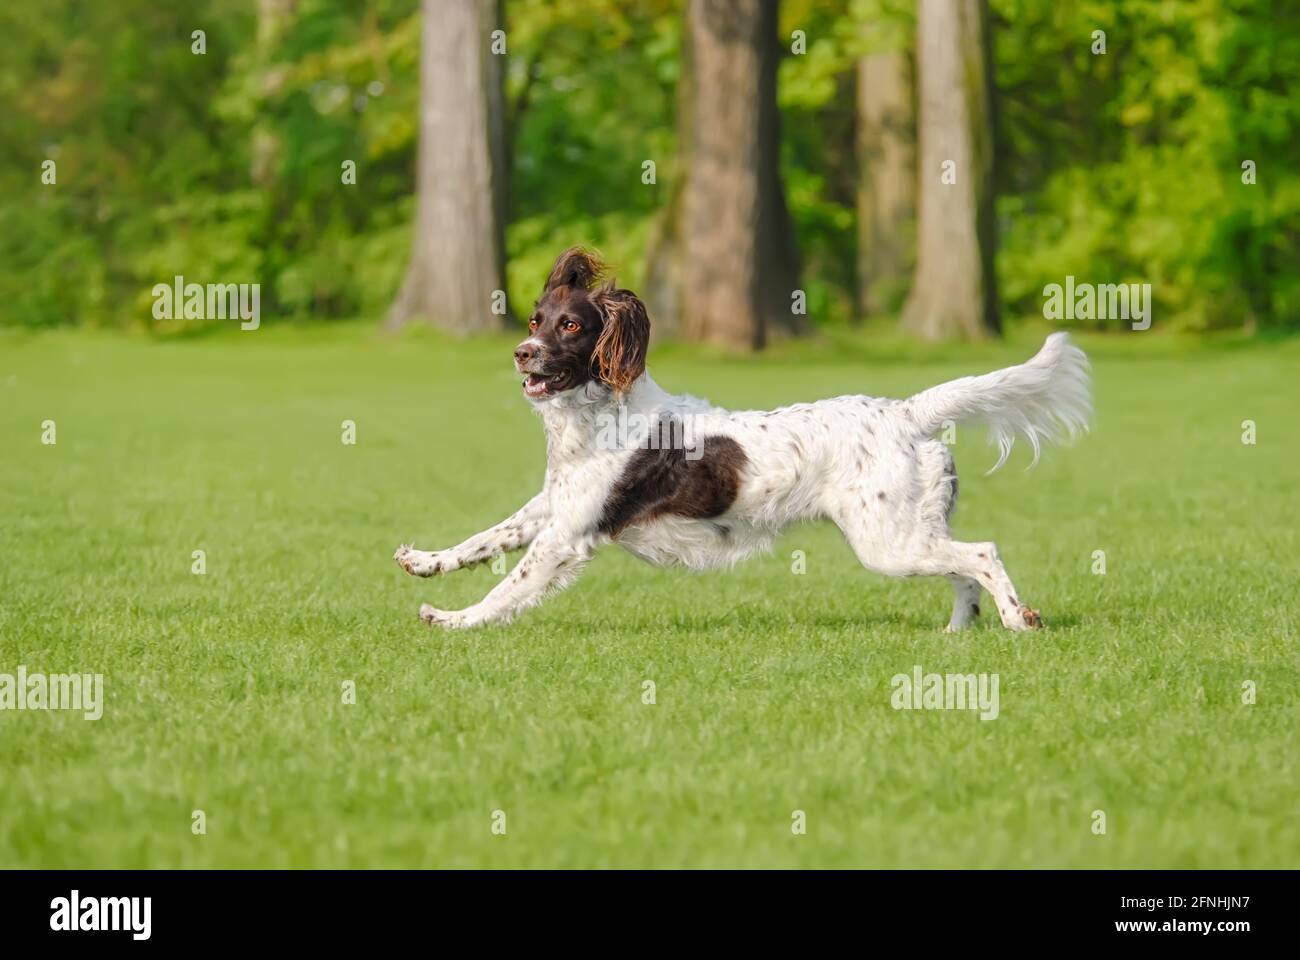 Kleine Münsterländer, eine seltene Hunderasse, weiblich, läuft spielerisch über eine grüne Graswiese, Deutschland Stockfoto